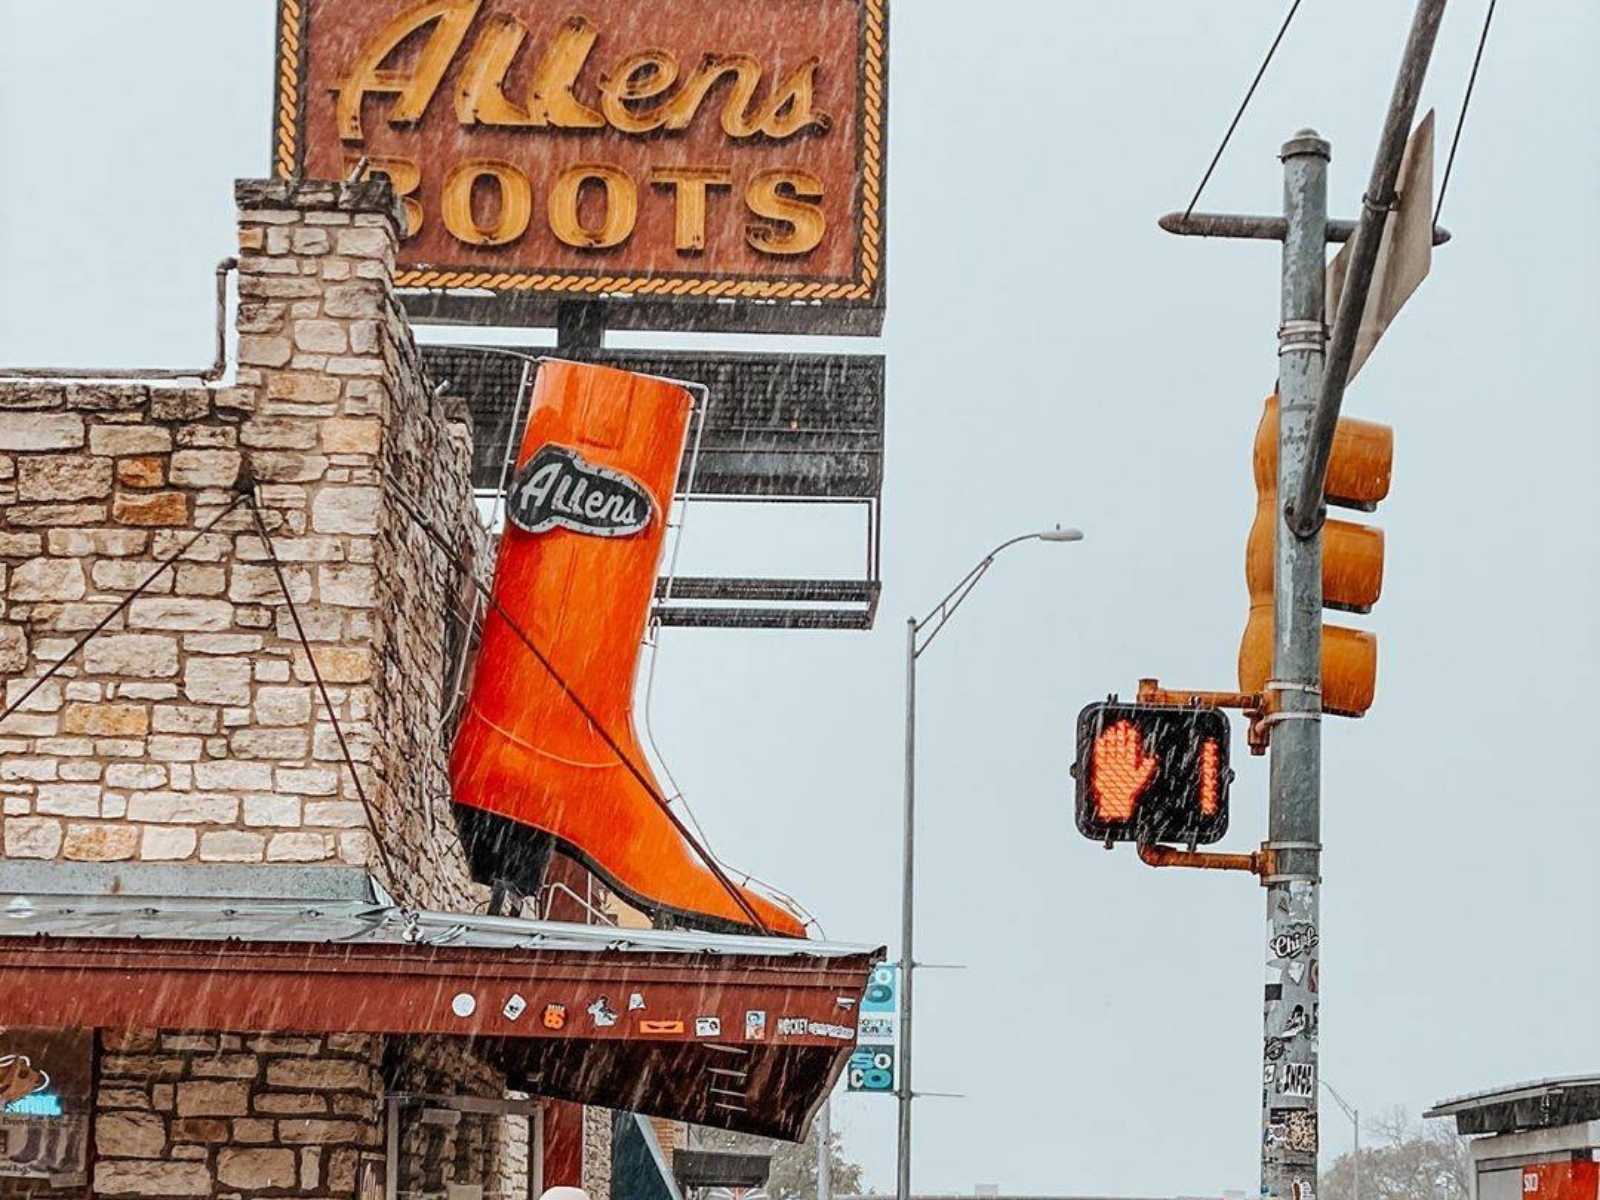 Allen's boots sign